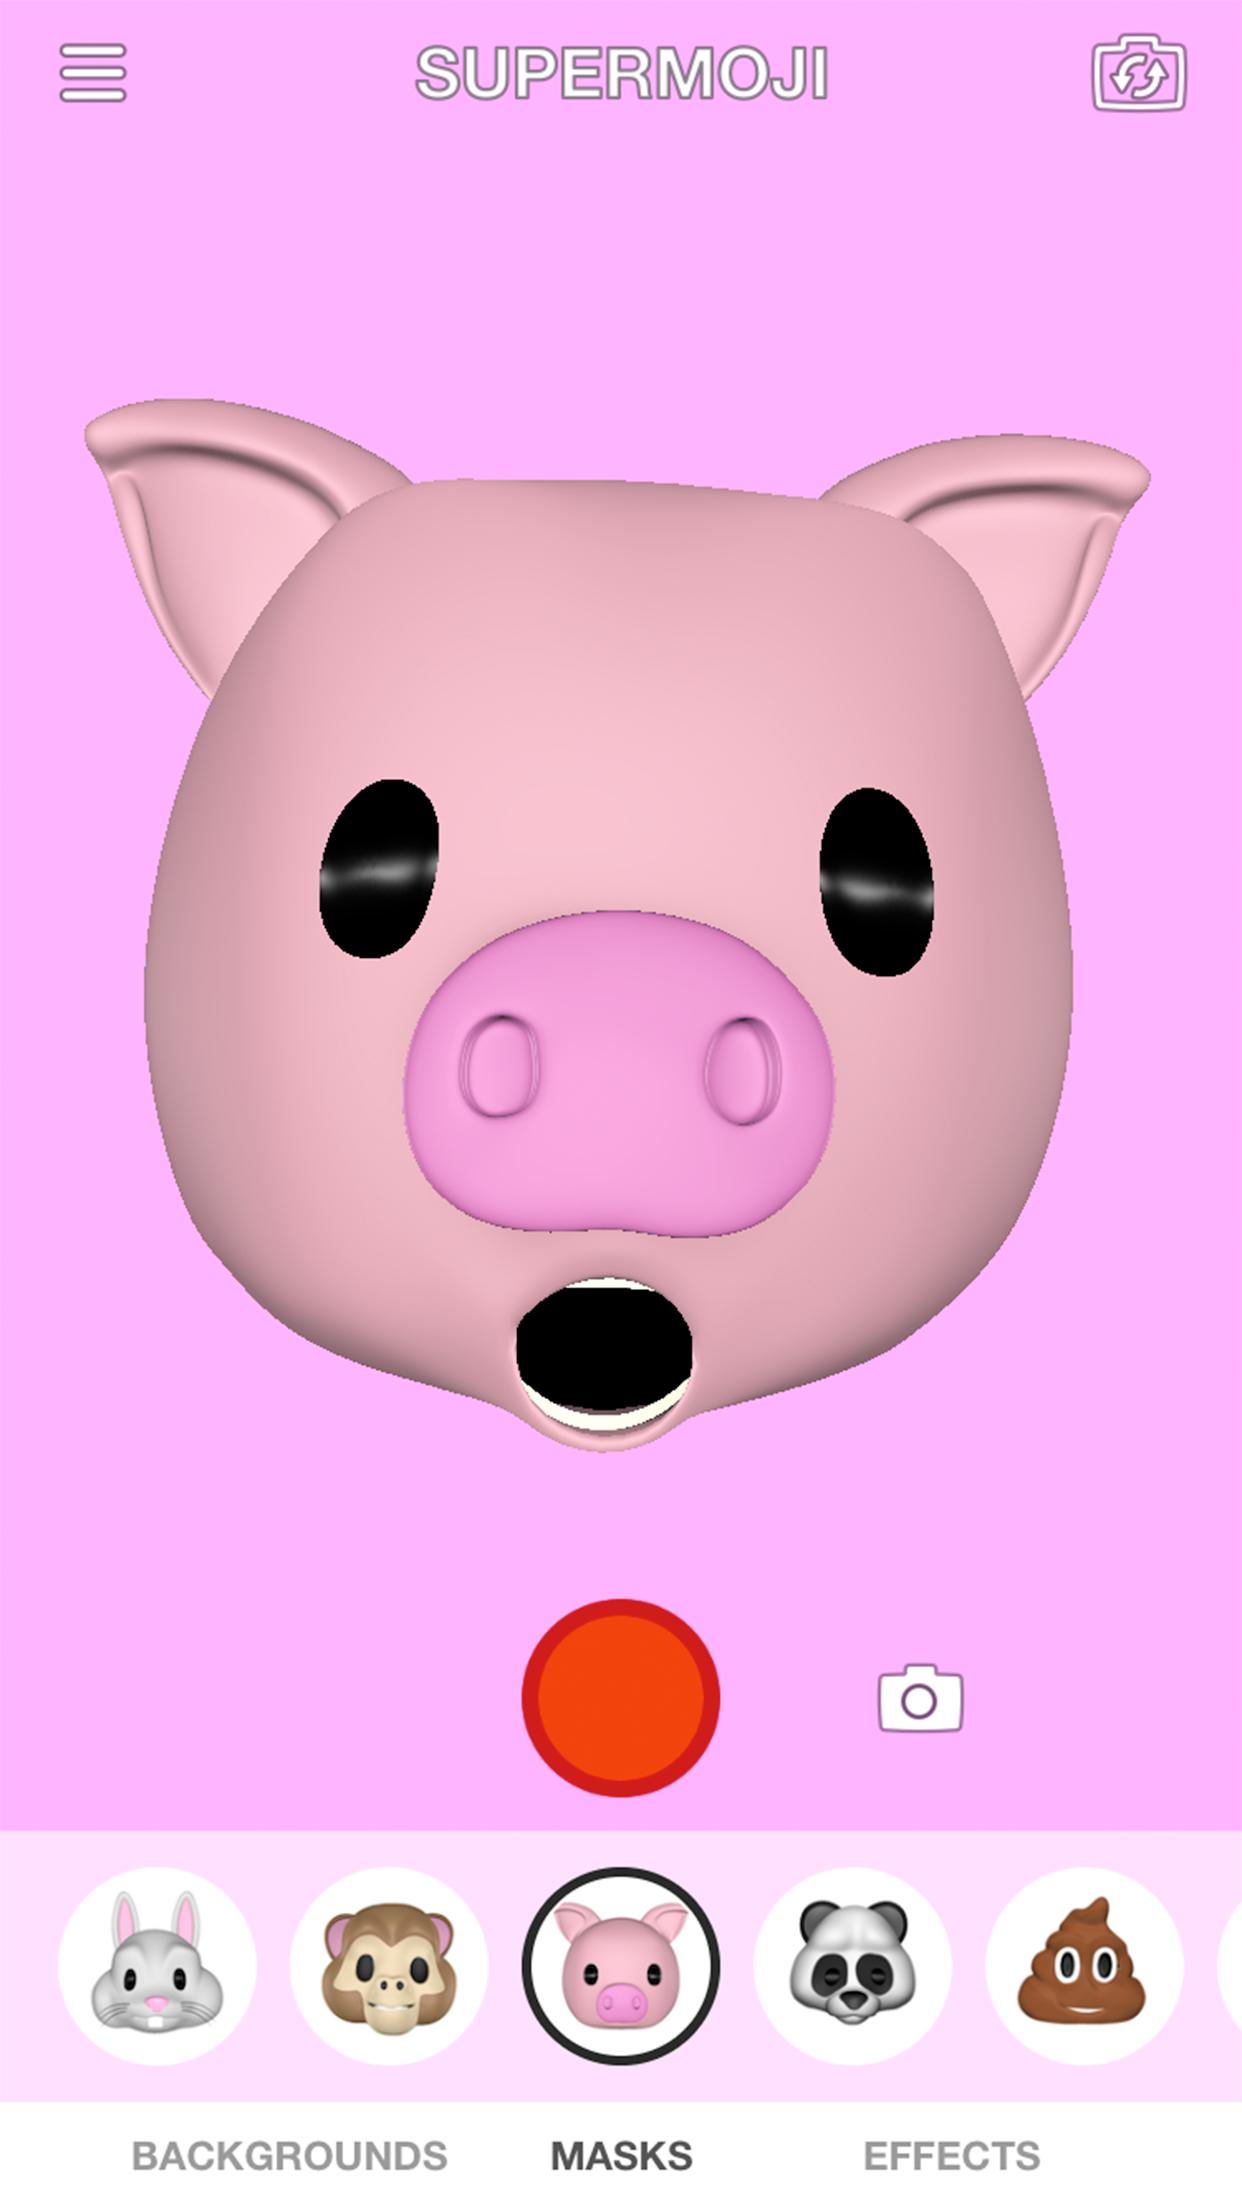 Приложение с эмодзи. Нос свинки андроид смайлик.